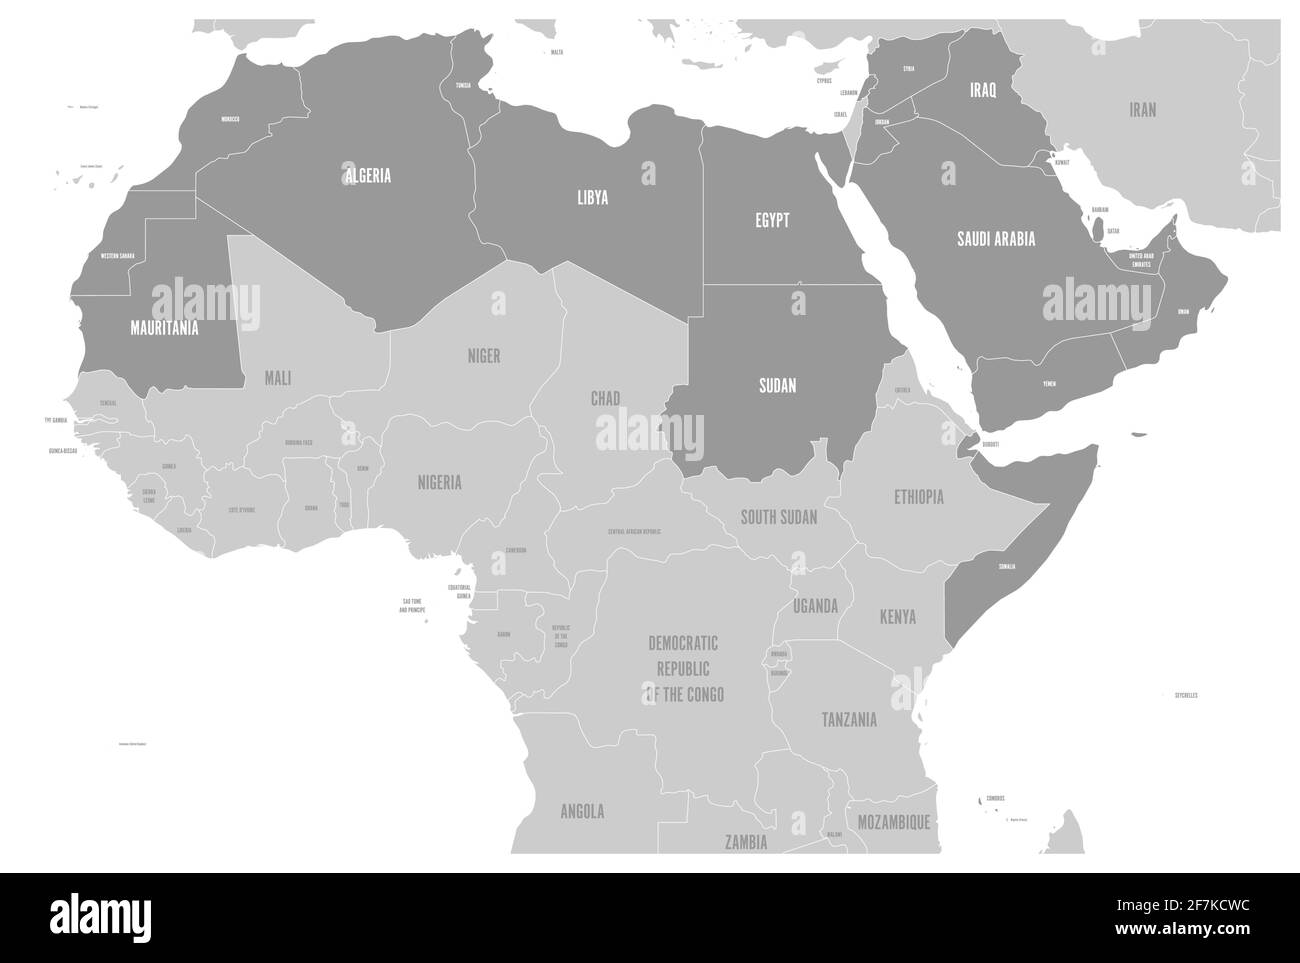 Mappa politica degli stati del mondo arabo con 22 paesi di lingua araba illuminati. Africa del Nord e Medio Oriente. Vettore Illustrazione Vettoriale